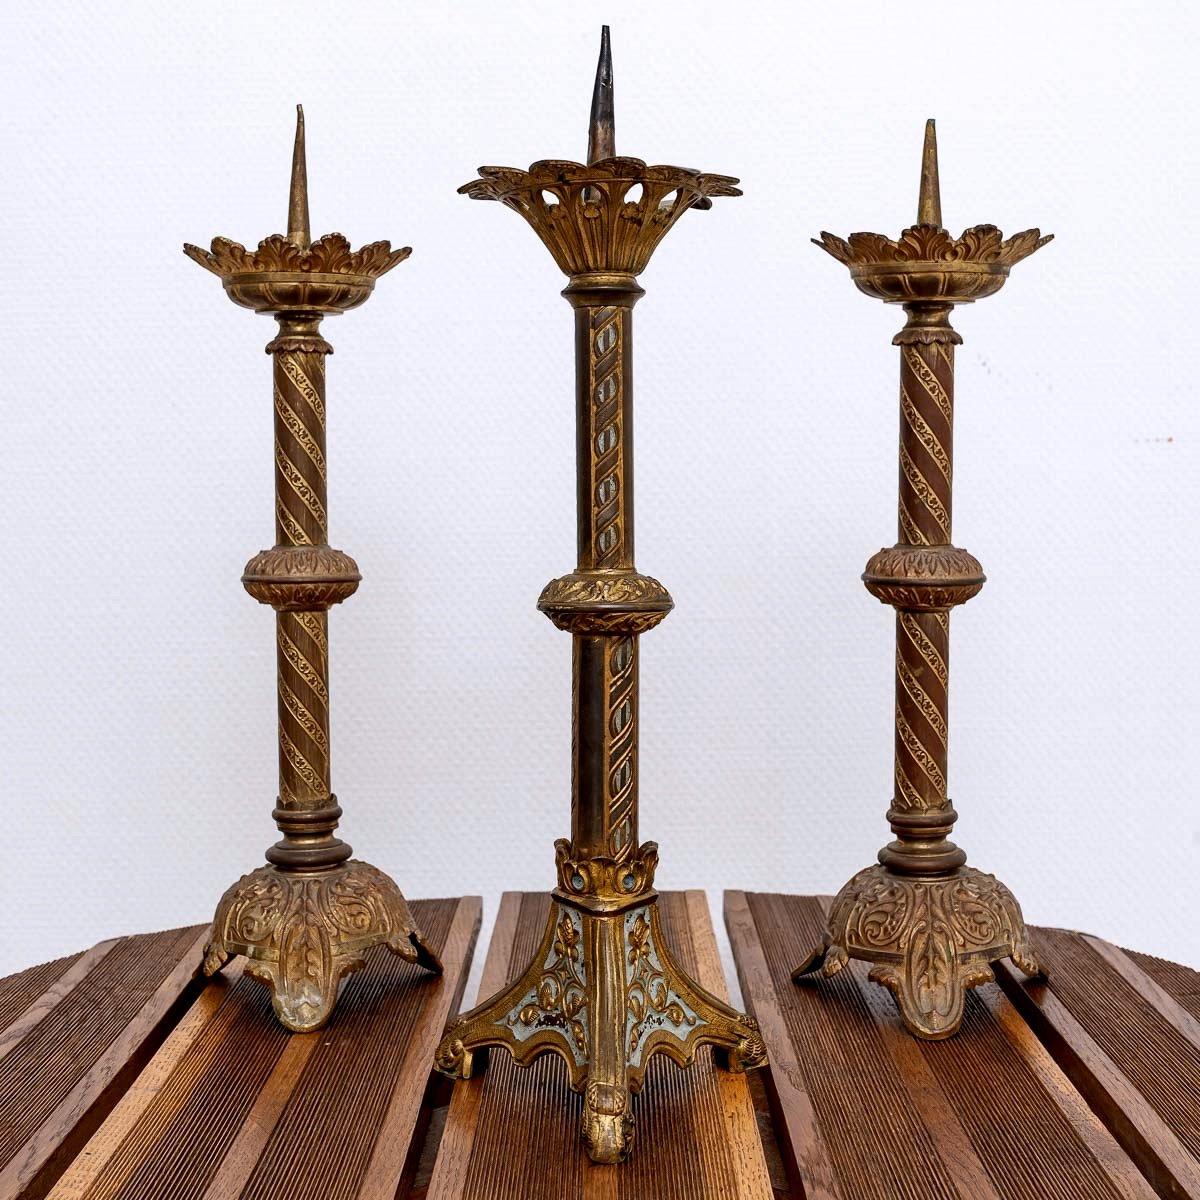 Un charmant ensemble de trois chandeliers d'autel en bronze.
À l'origine, les chandeliers reposaient généralement sur trois pieds, surmontés d'un nœud et d'une mèche pour contenir la cire.
Au centre de cette coupe se trouve une pointe sur laquelle